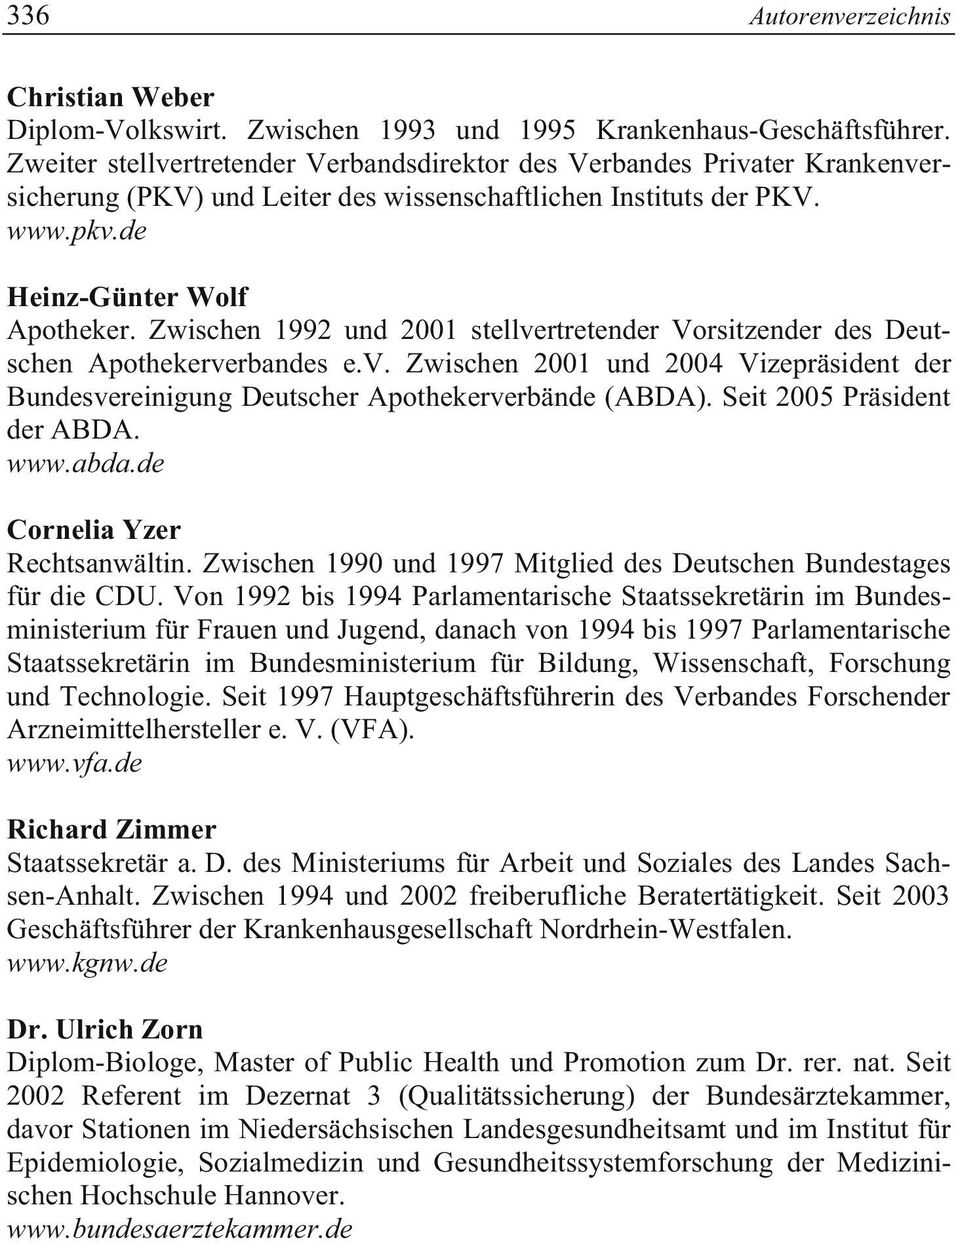 Zwischen 1992 und 2001 stellvertretender Vorsitzender des Deutschen Apothekerverbandes e.v. Zwischen 2001 und 2004 Vizepräsident der Bundesvereinigung Deutscher Apothekerverbände (ABDA).